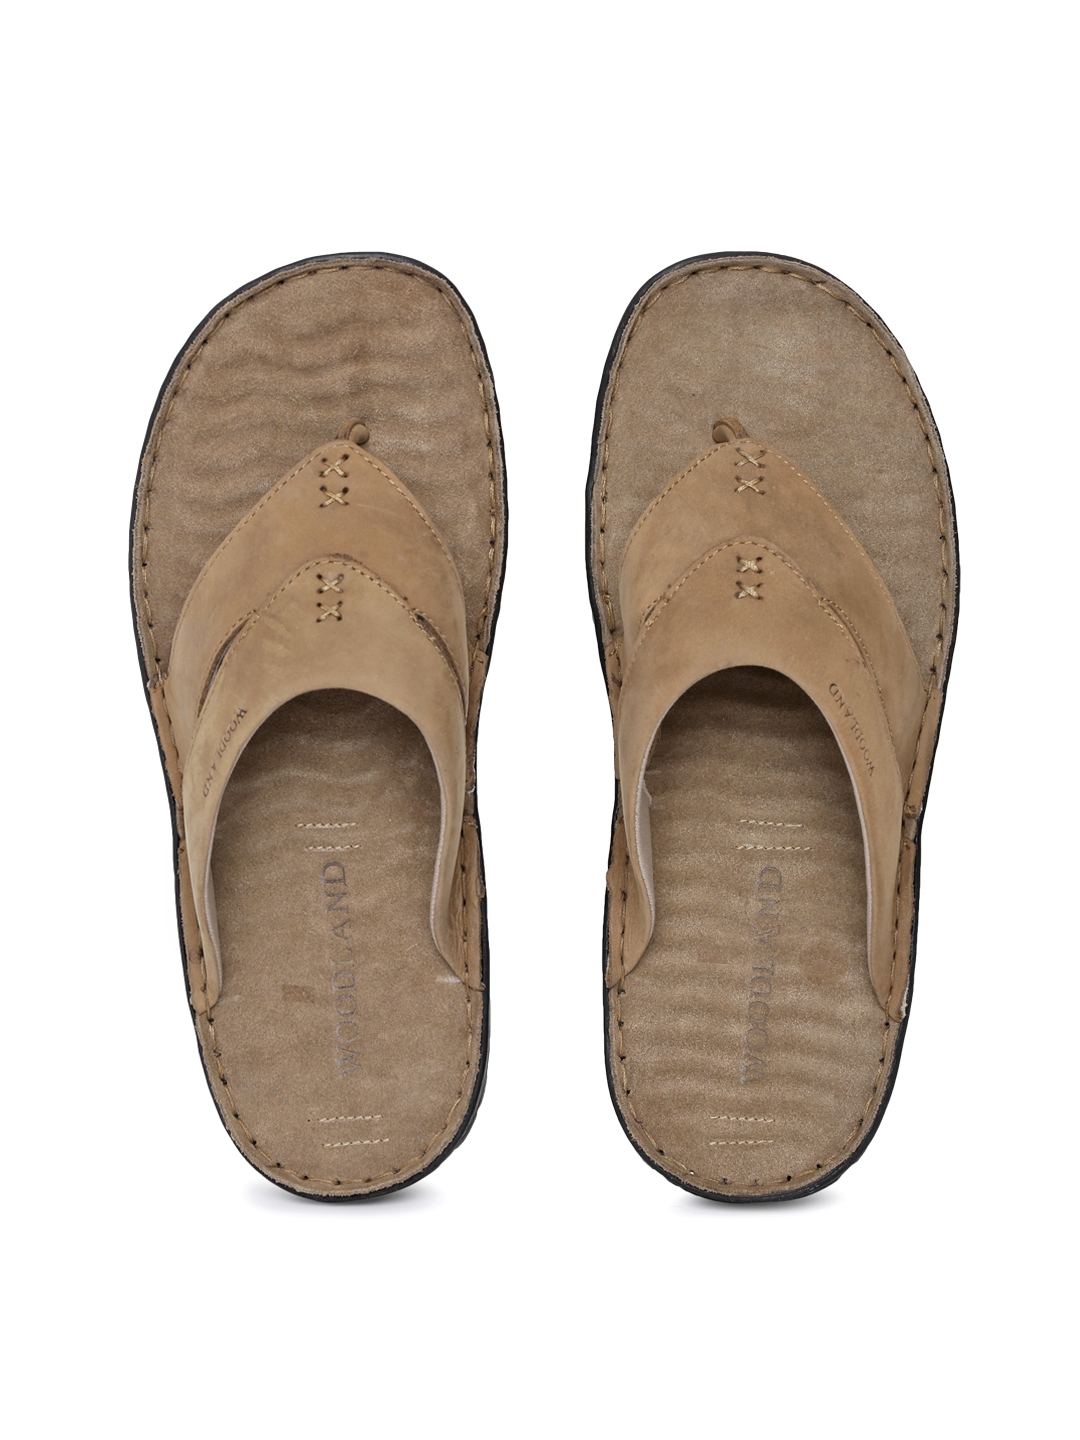 Buy Woodland Men Khaki Leather Sandals 